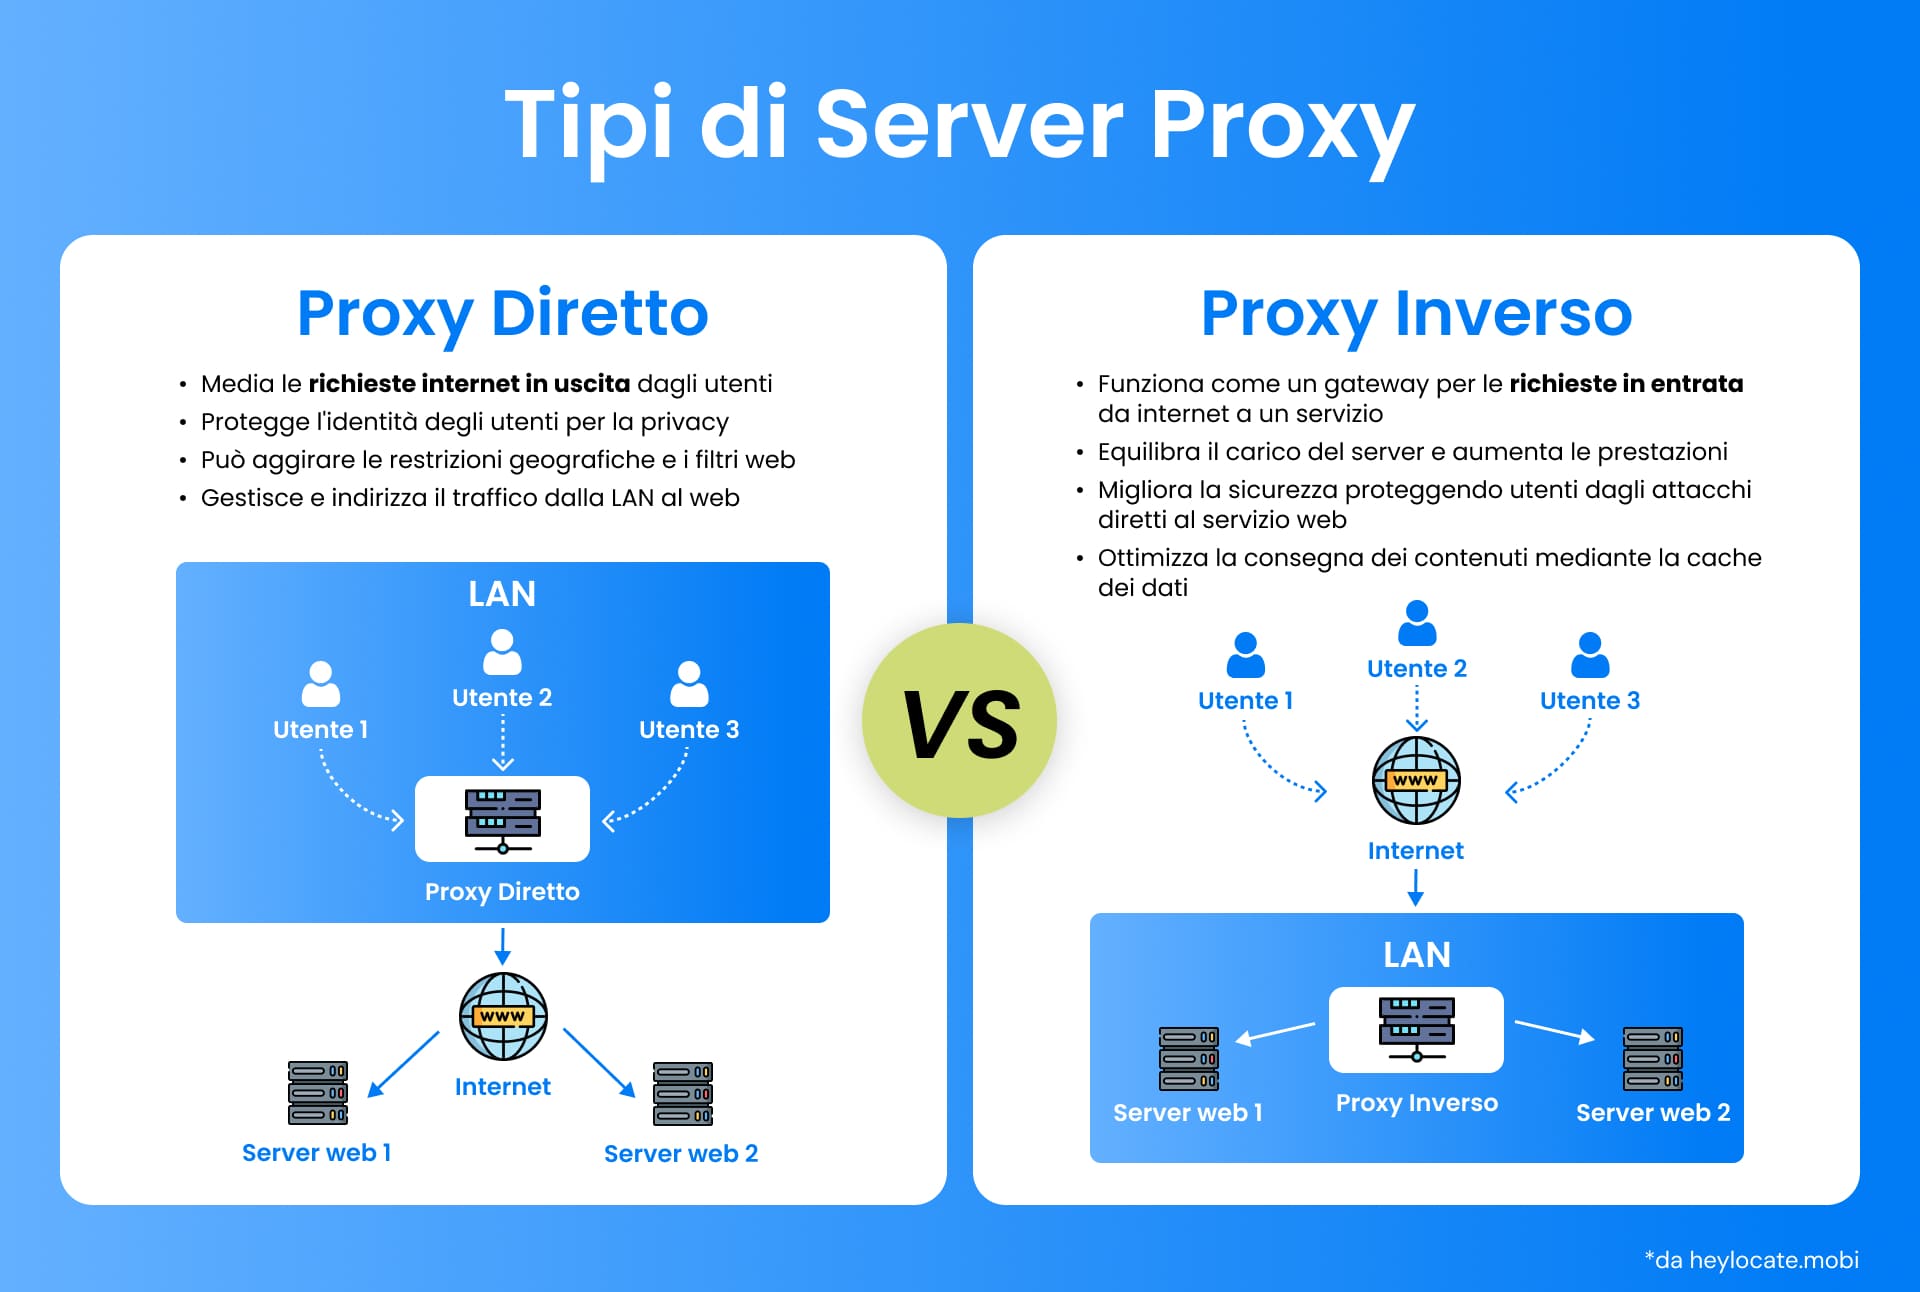 Un confronto visivo tra i server proxy forward e reverse, che illustra i loro diversi ruoli nell'architettura di rete e nella comunicazione Internet.